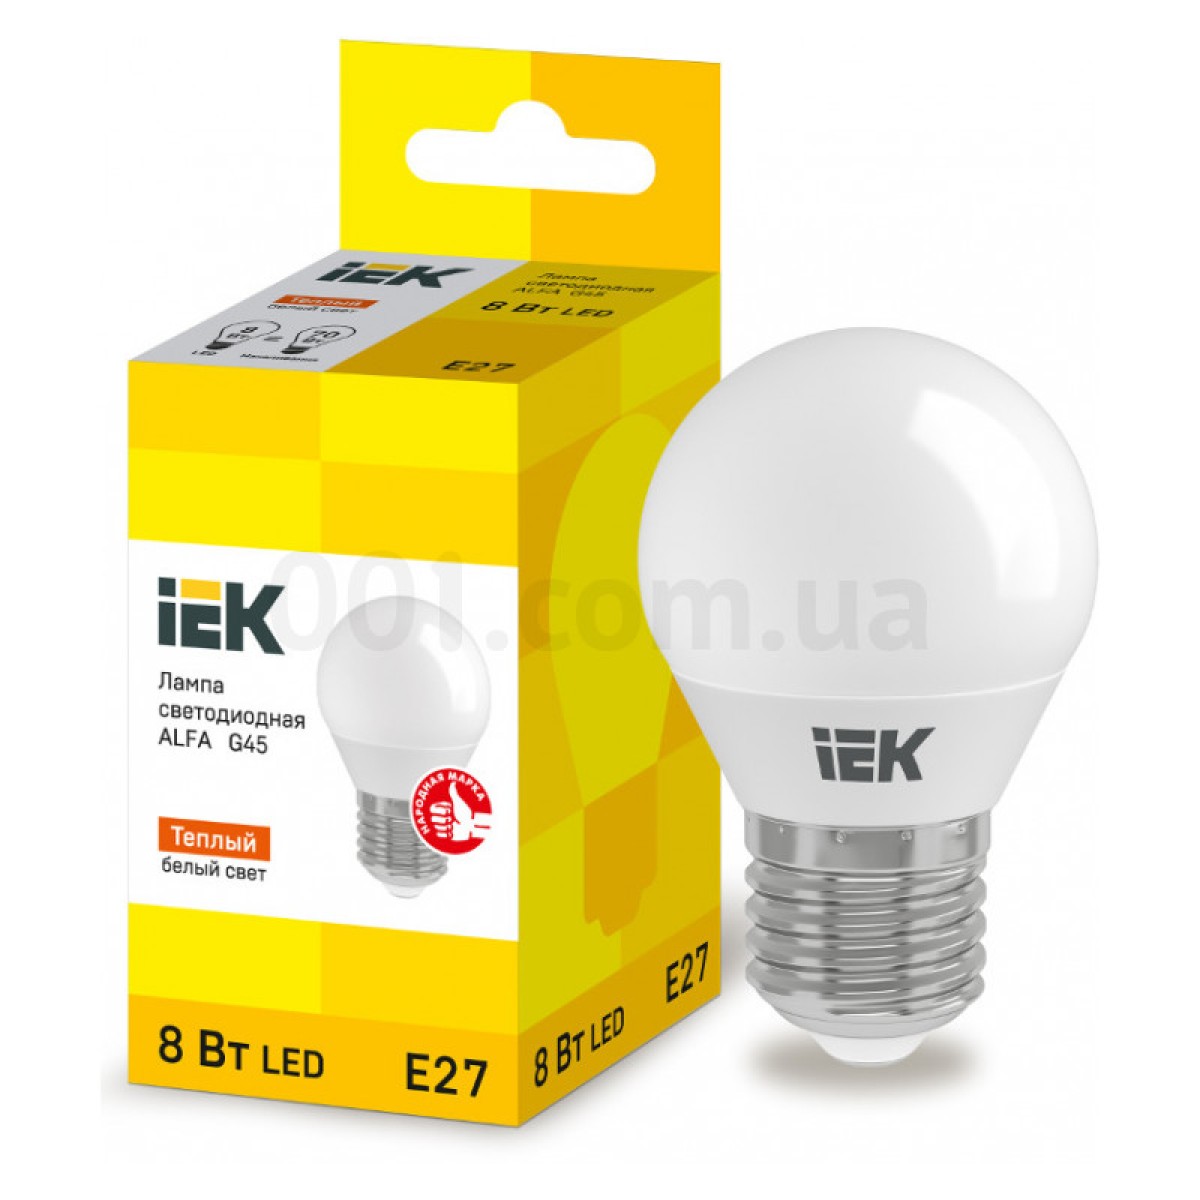 Світлодіодна лампа LED ALFA G45 (куля) 8 Вт 230В 3000К E27, IEK 256_256.jpg